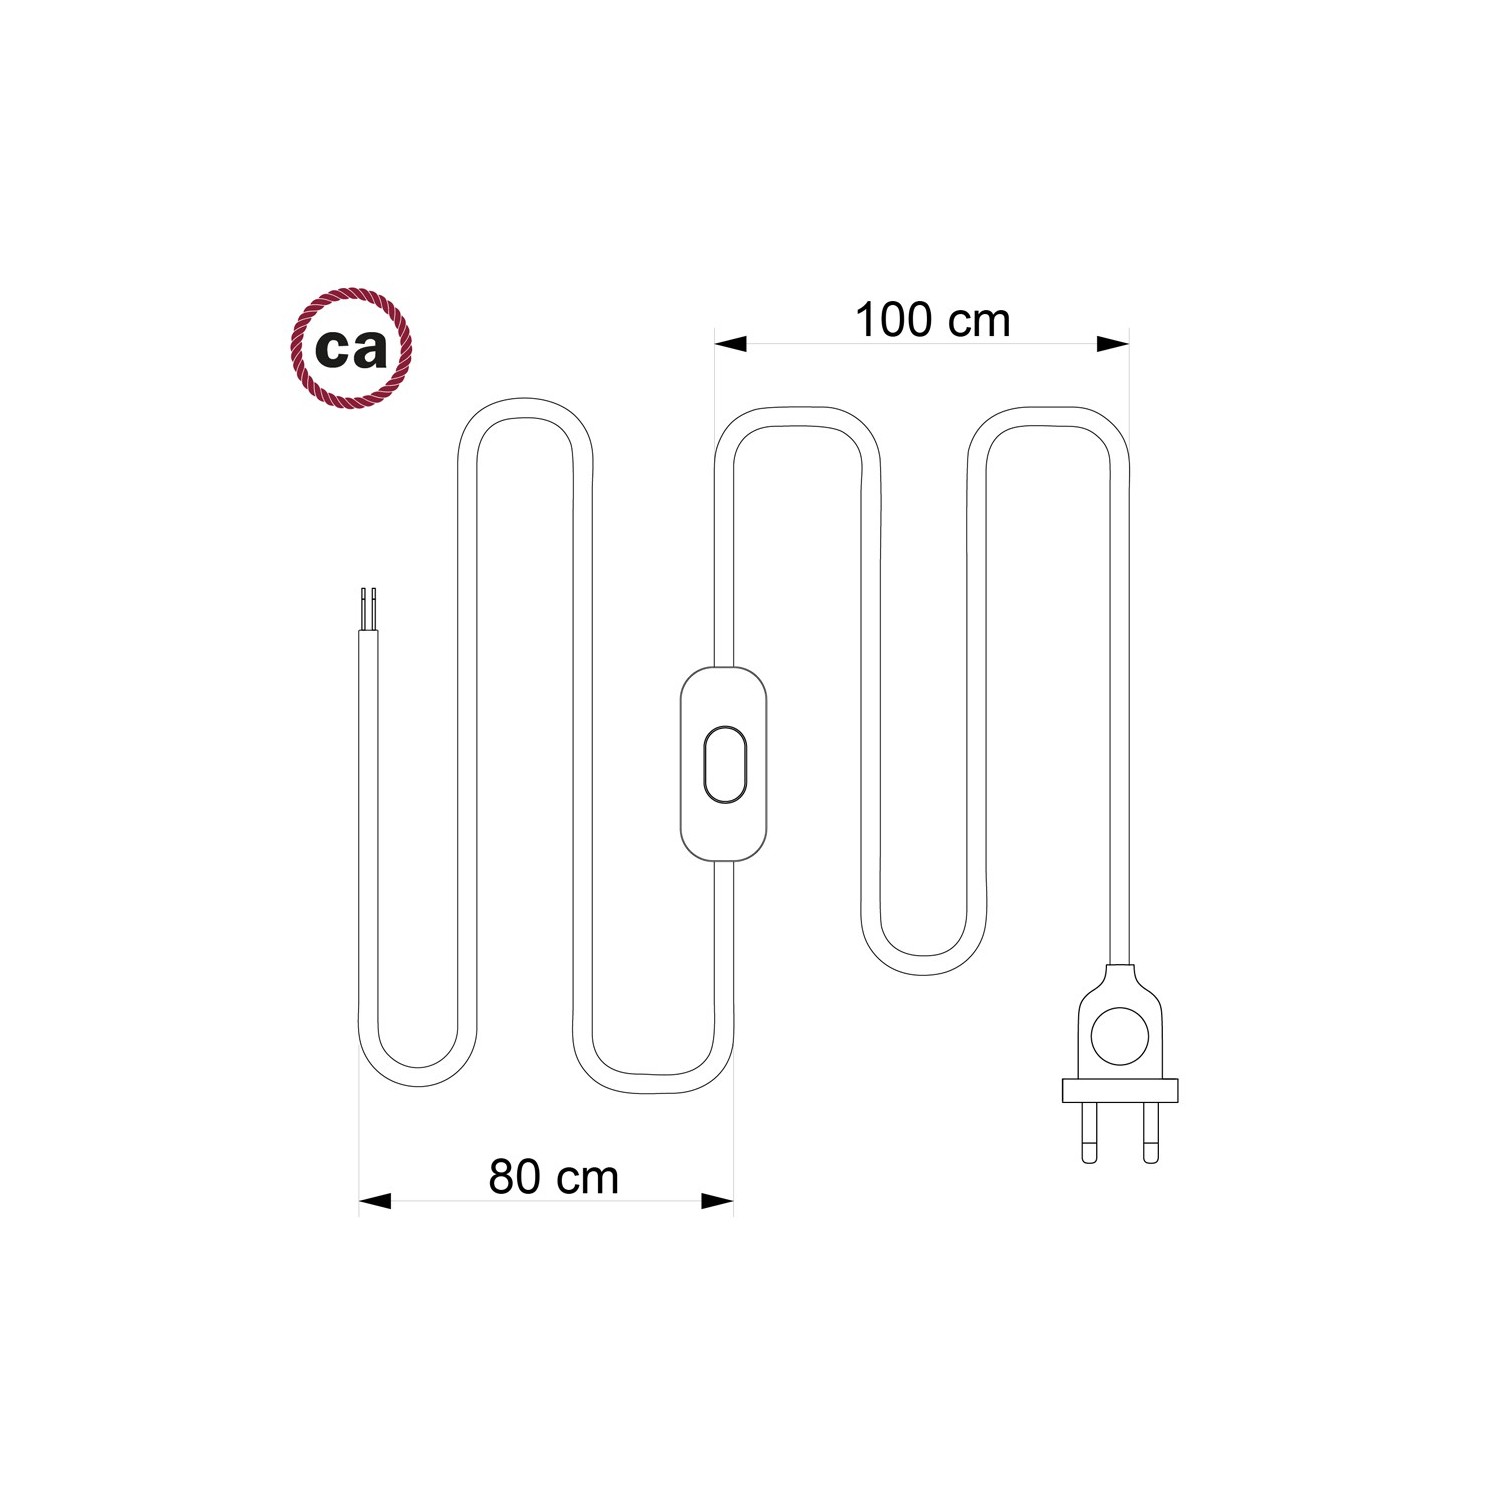 Cordon pour lampe, câble RC23 Coton Daim 1,80 m. Choisissez la couleur de la fiche et de l'interrupteur!